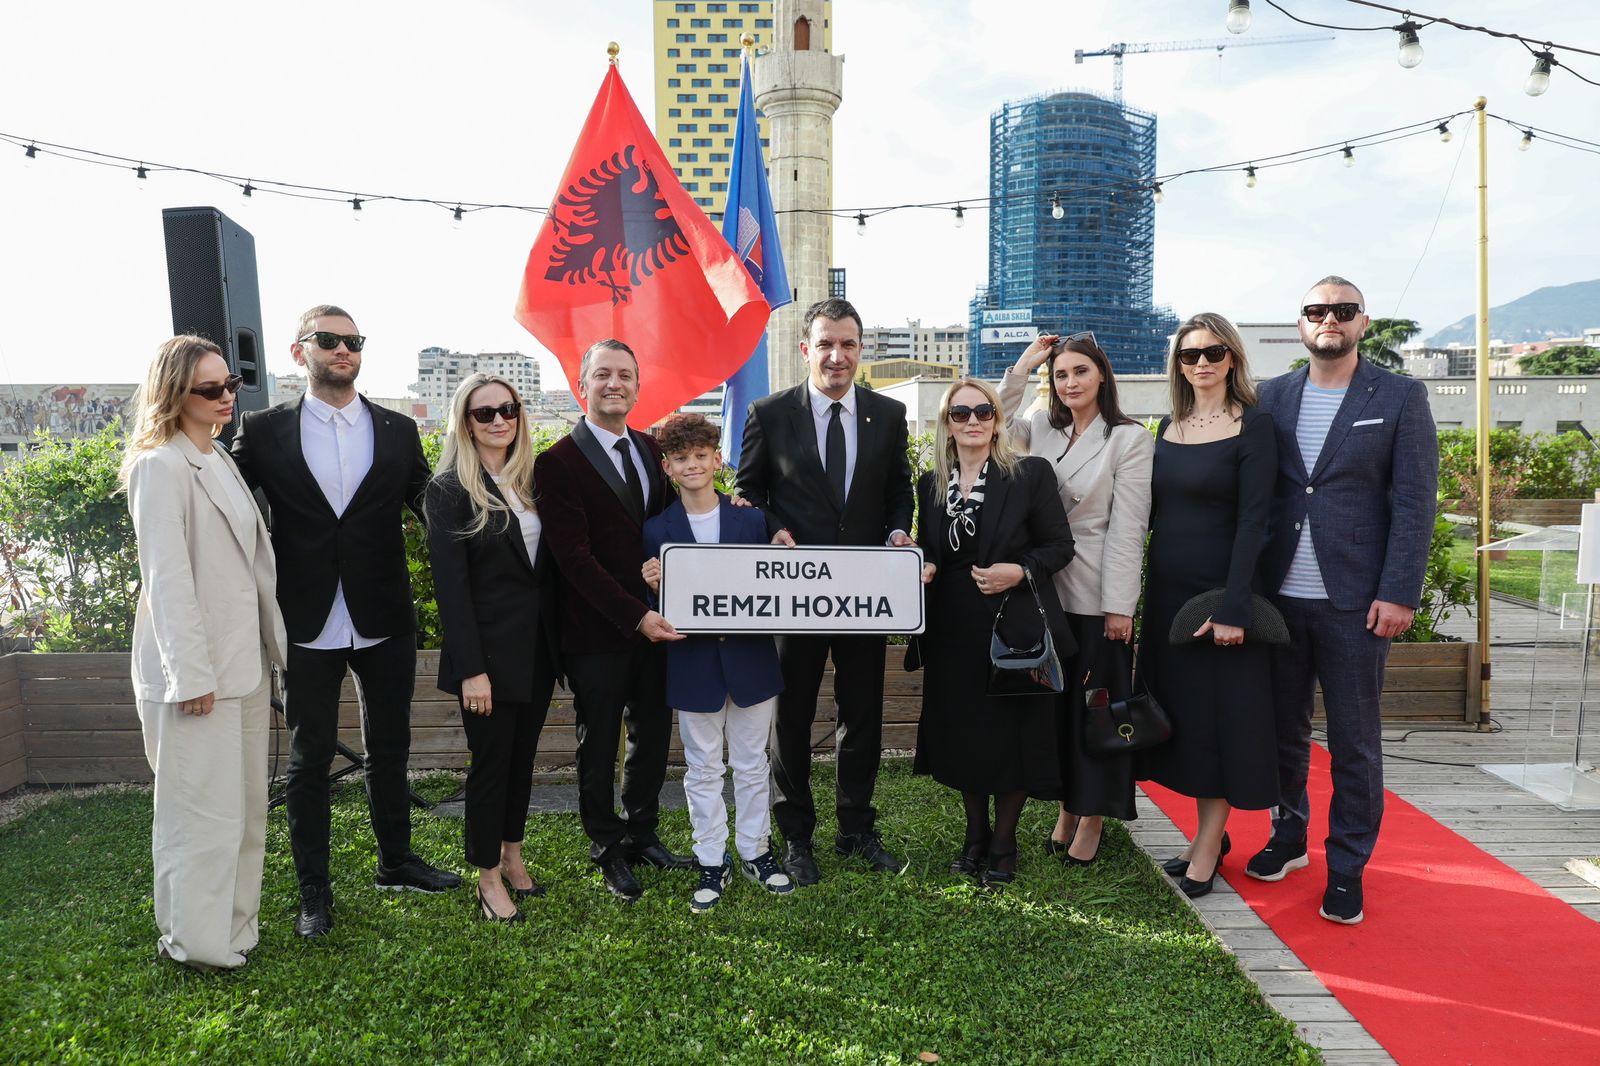 Një rrugë merr emrin e Remzi Hoxhës, Tirana ndjesë publike familjes së sipërmarrësit që u zhduk nga SHIK-u i Berishës në 1995